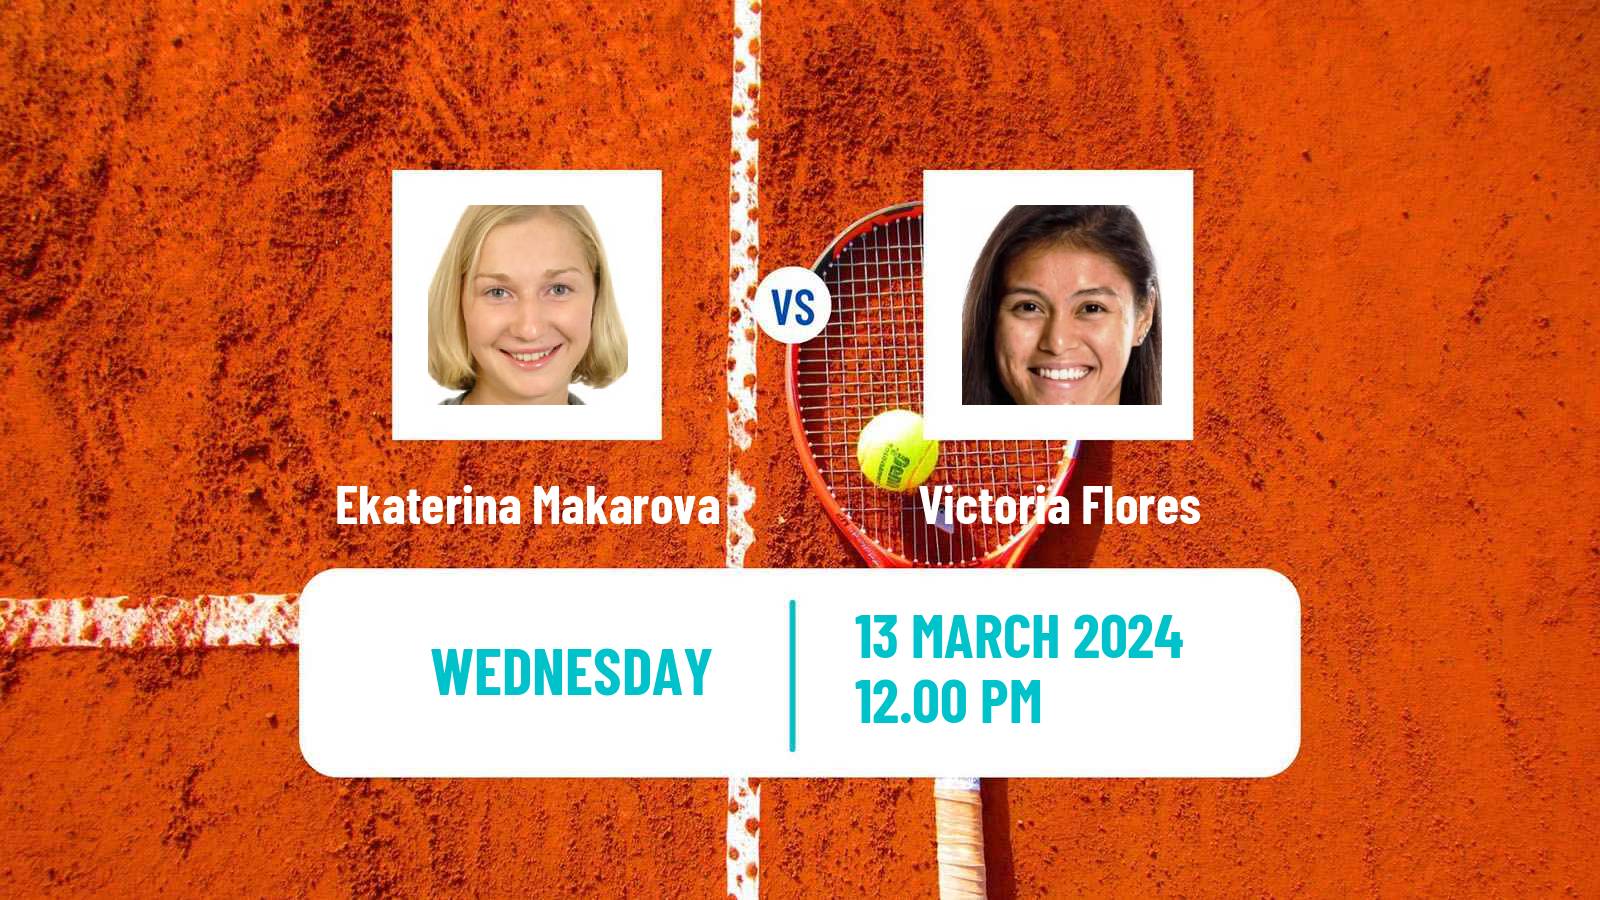 Tennis ITF W35 Santo Domingo 2 Women Ekaterina Makarova - Victoria Flores